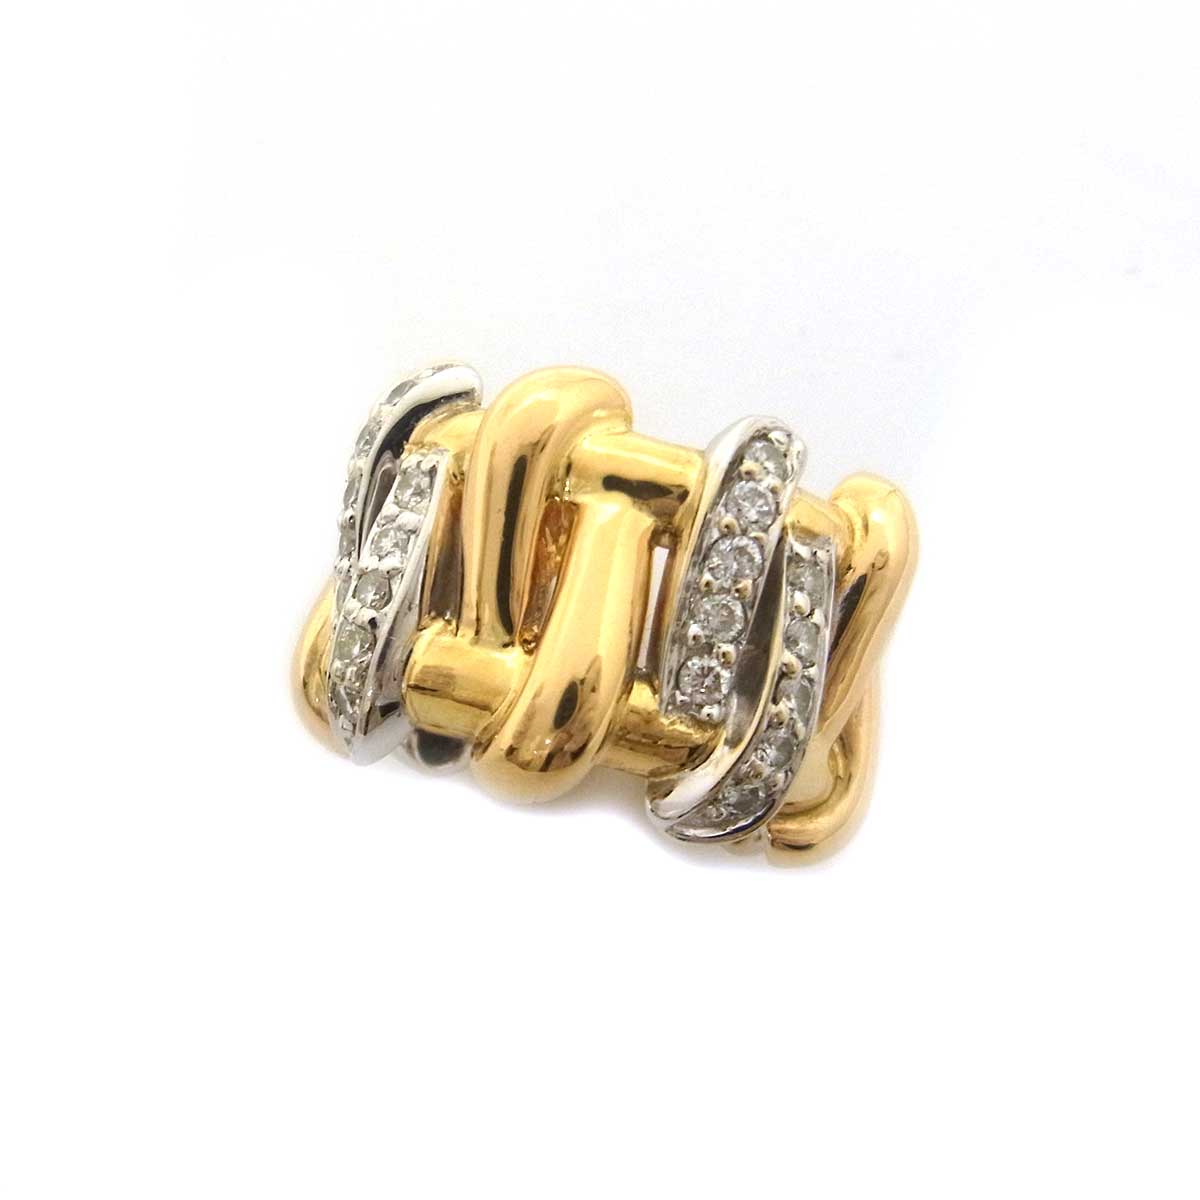 アレッツォ(AREZZO)750YG WG ダイヤモンド指輪 11号 12号 ゴールドカラー